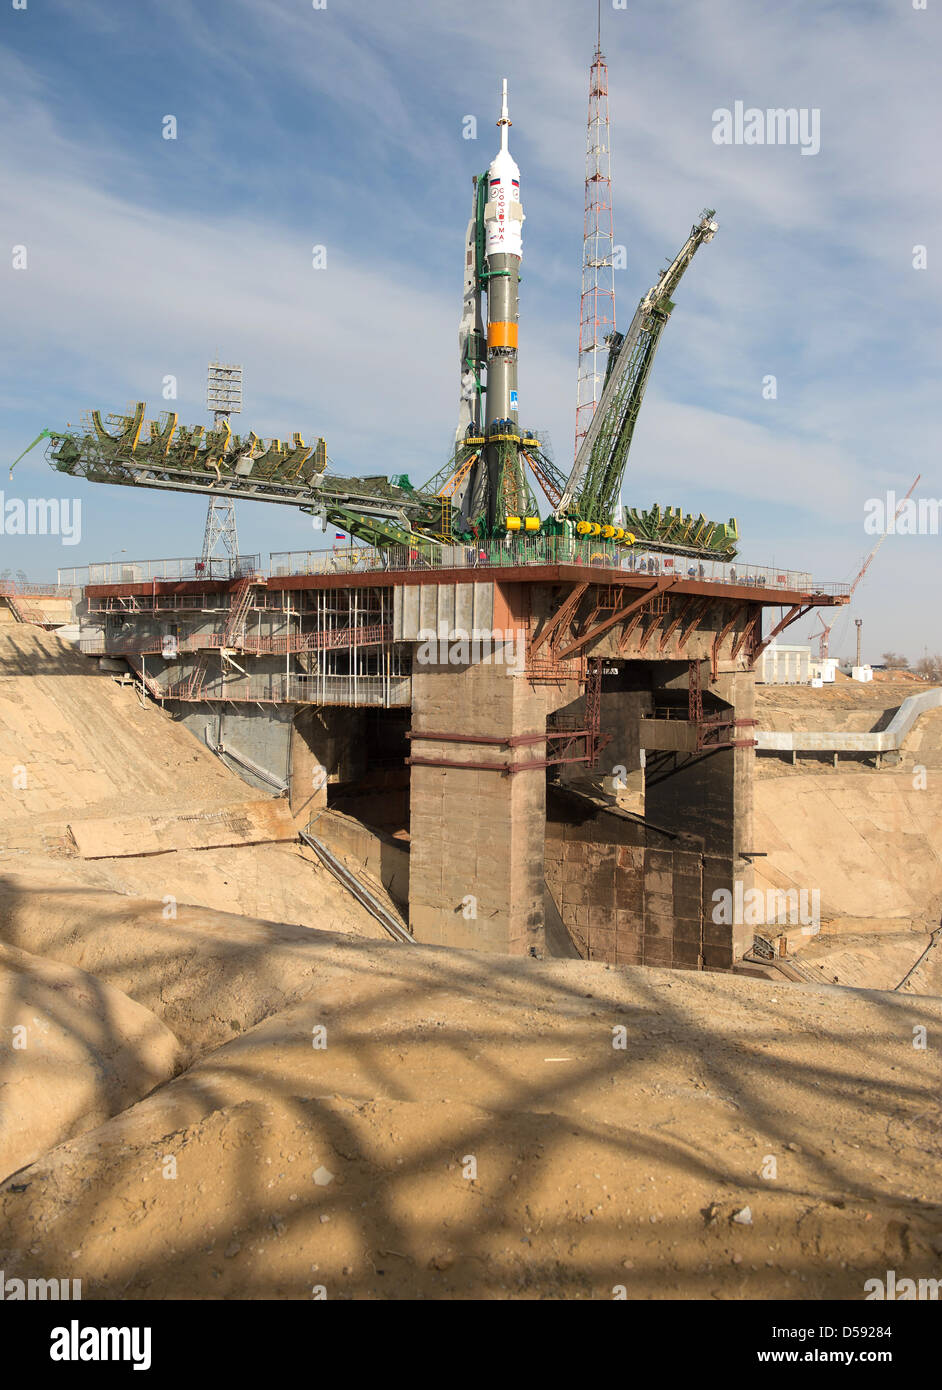 L'Agence spatiale russe Soyouz TMA-08M est placé en position à la plateforme de lancement au cosmodrome de Baïkonour, le 26 mars 2013, au Kazakhstan. Lancement de la fusée Soyouz est prévue pour le 29 mars et vous enverra sur un équipage Expédition 35 5 ans et 6 mois une mission à bord de la Station spatiale internationale. Banque D'Images